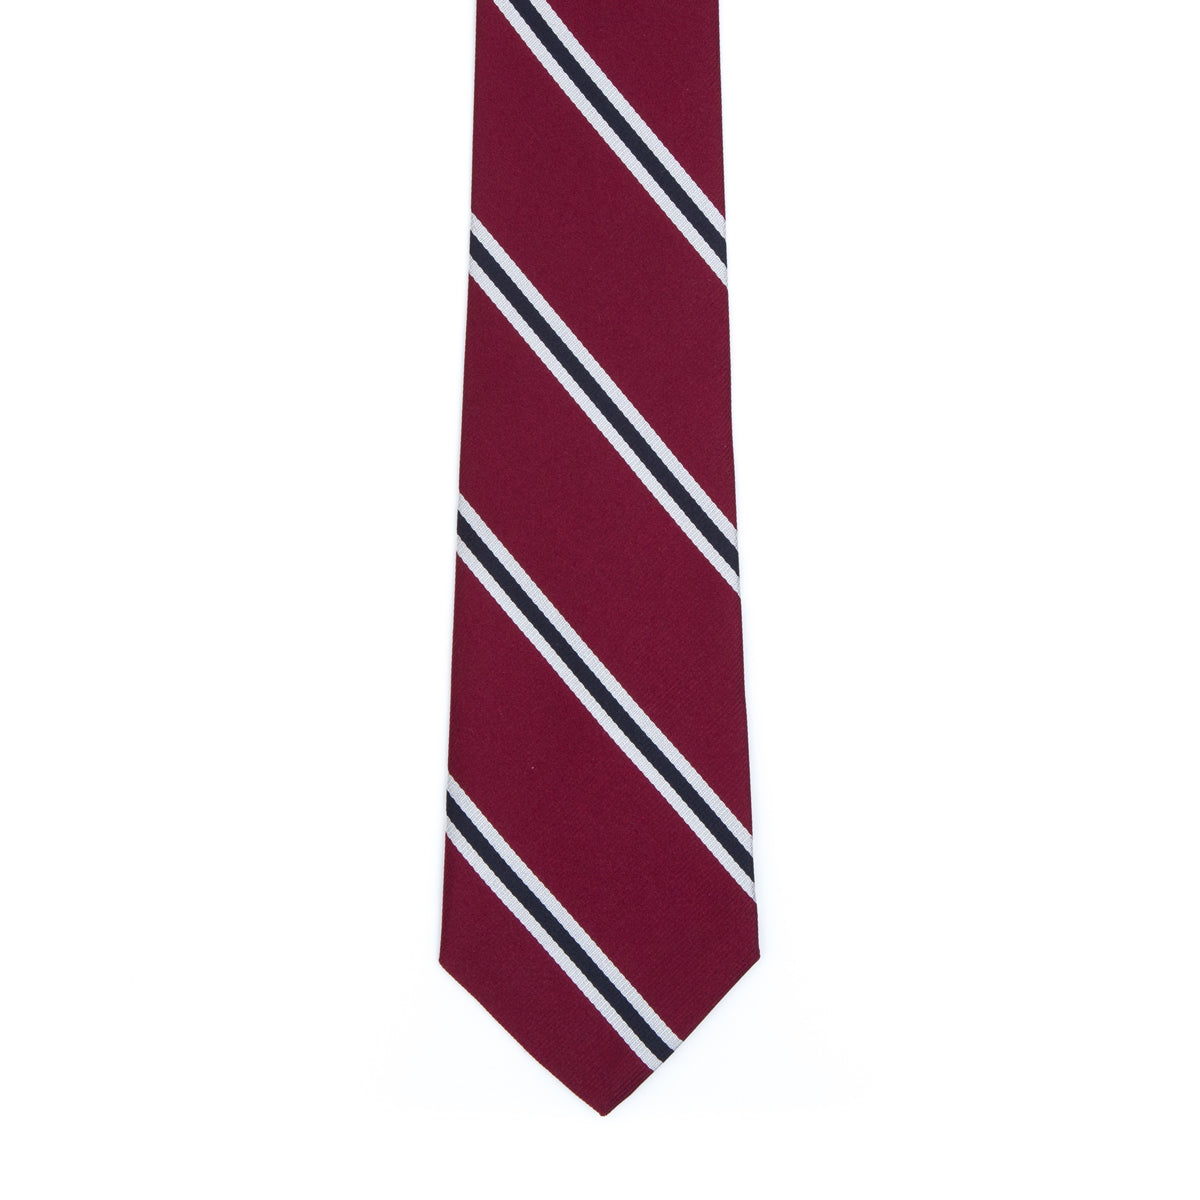 Silver striped tie